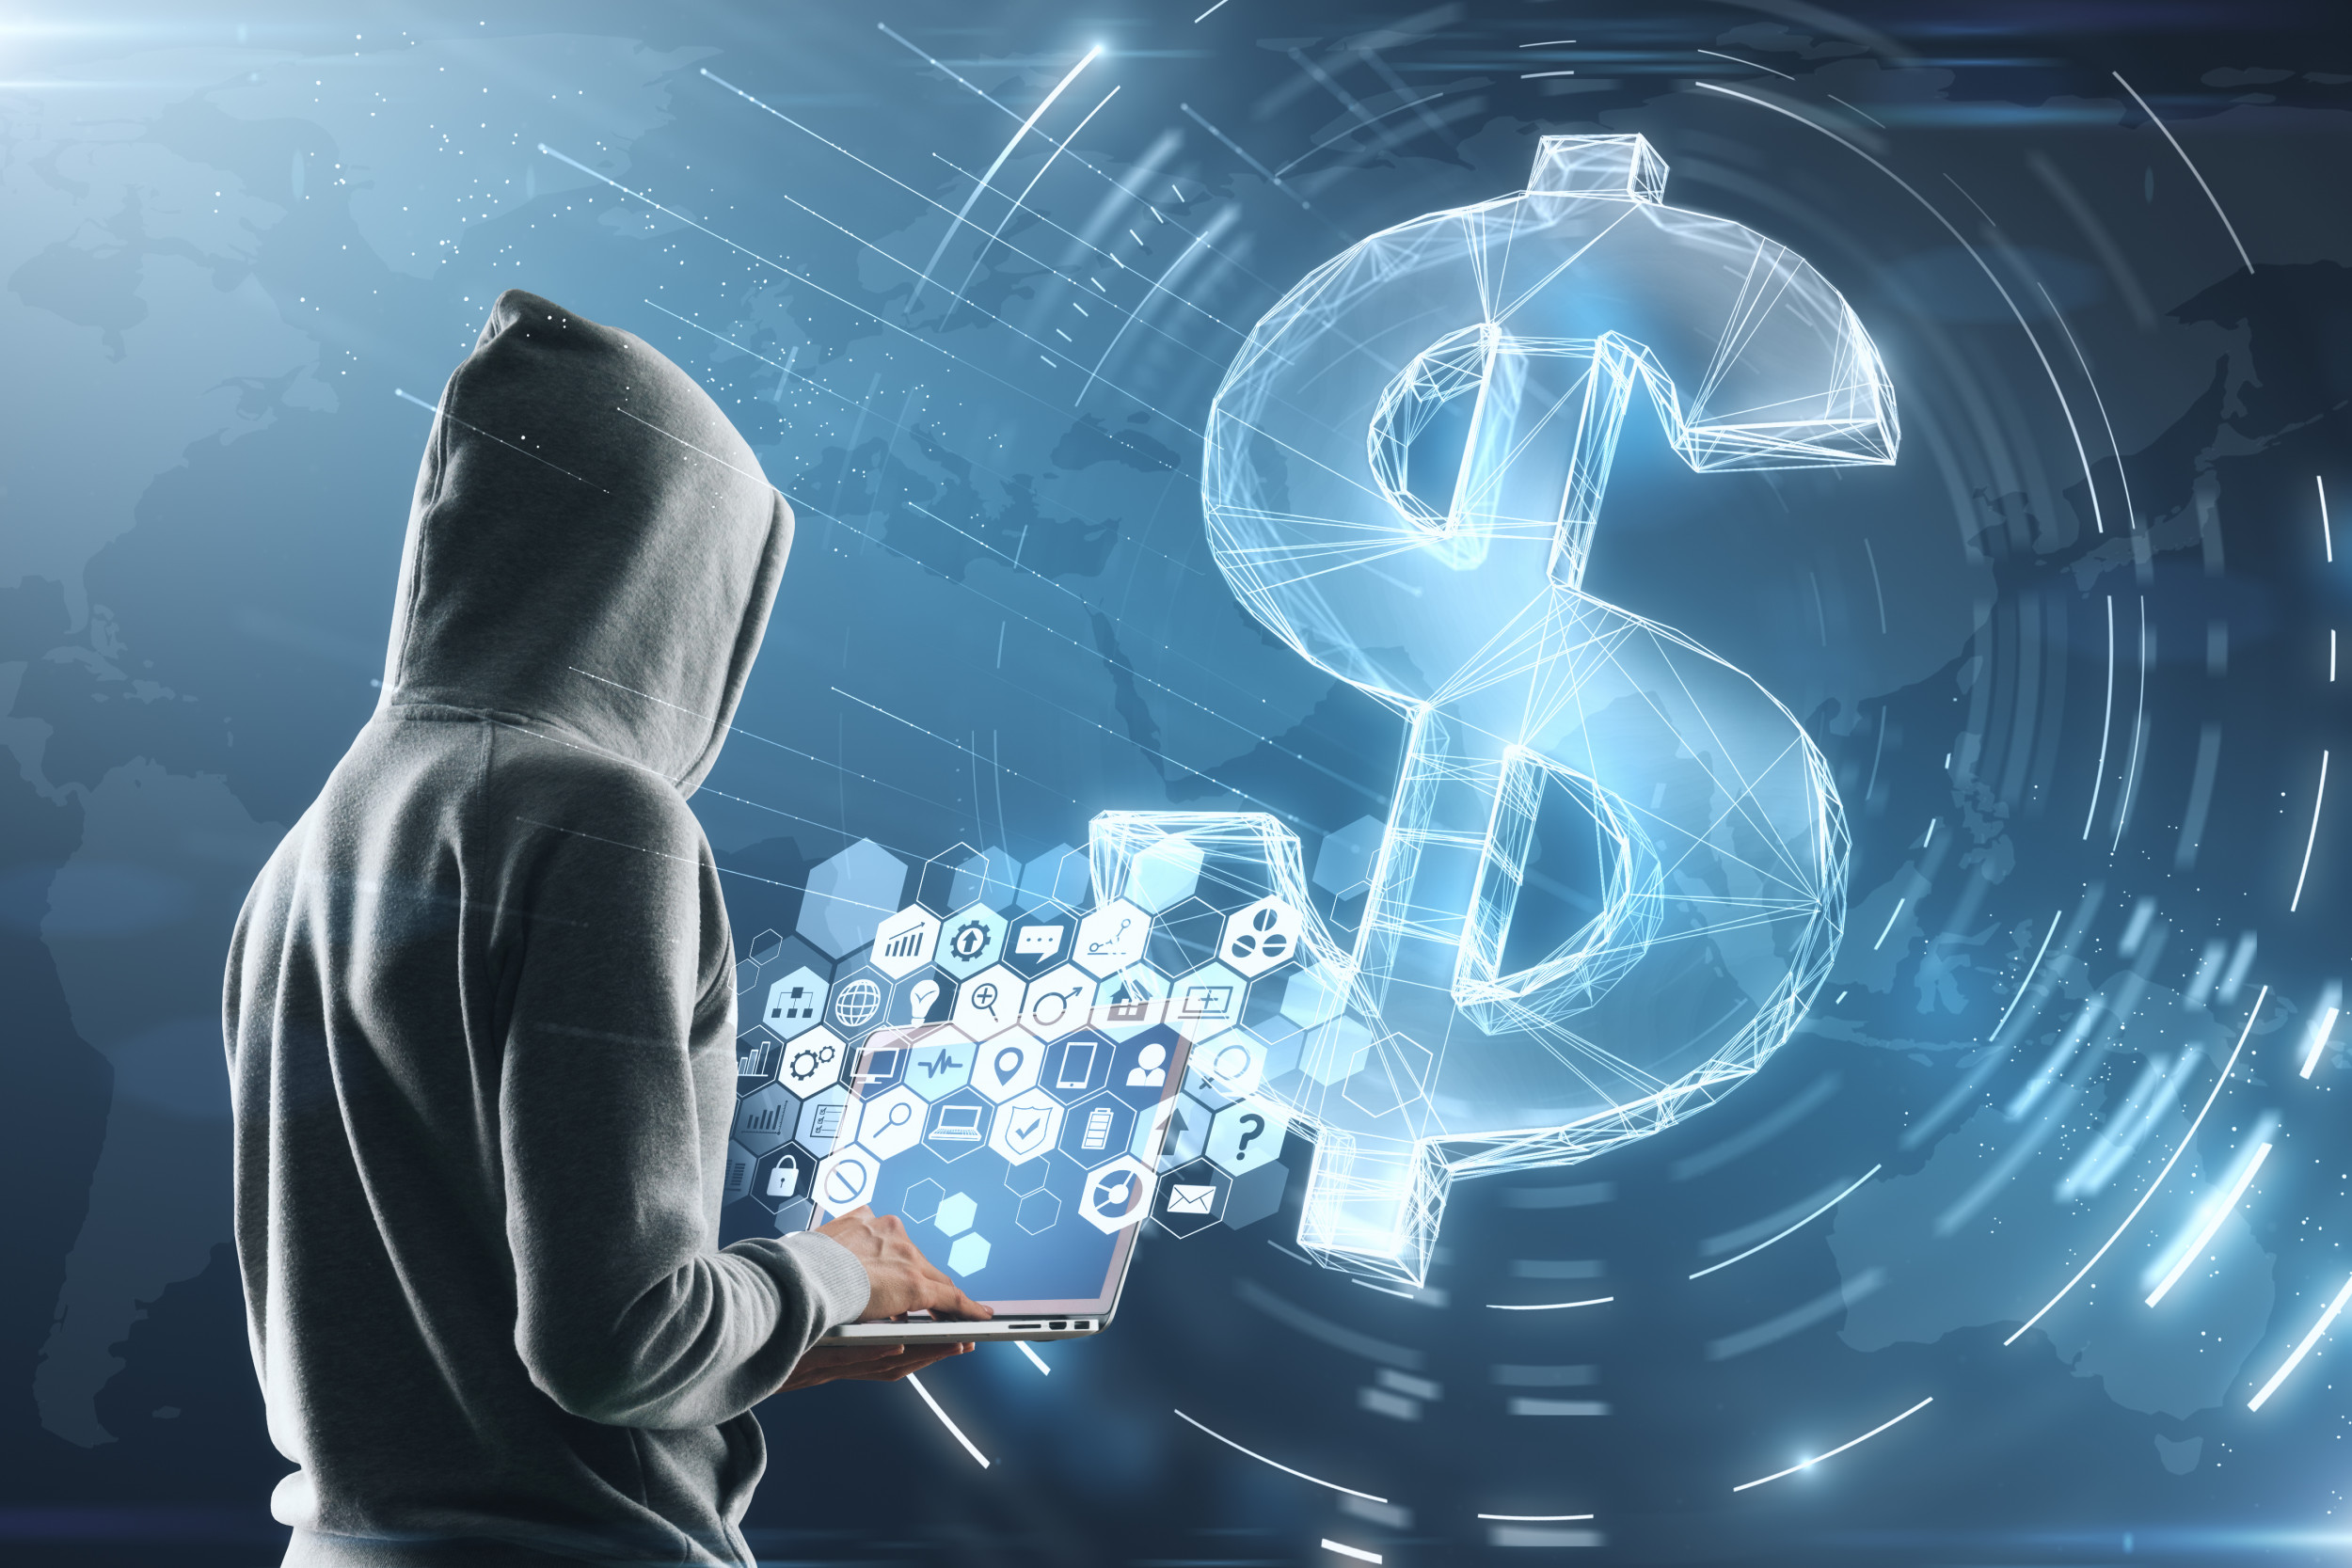 Хакеры похитили более $1 млрд в криптовалюте за 3 квартал этого года